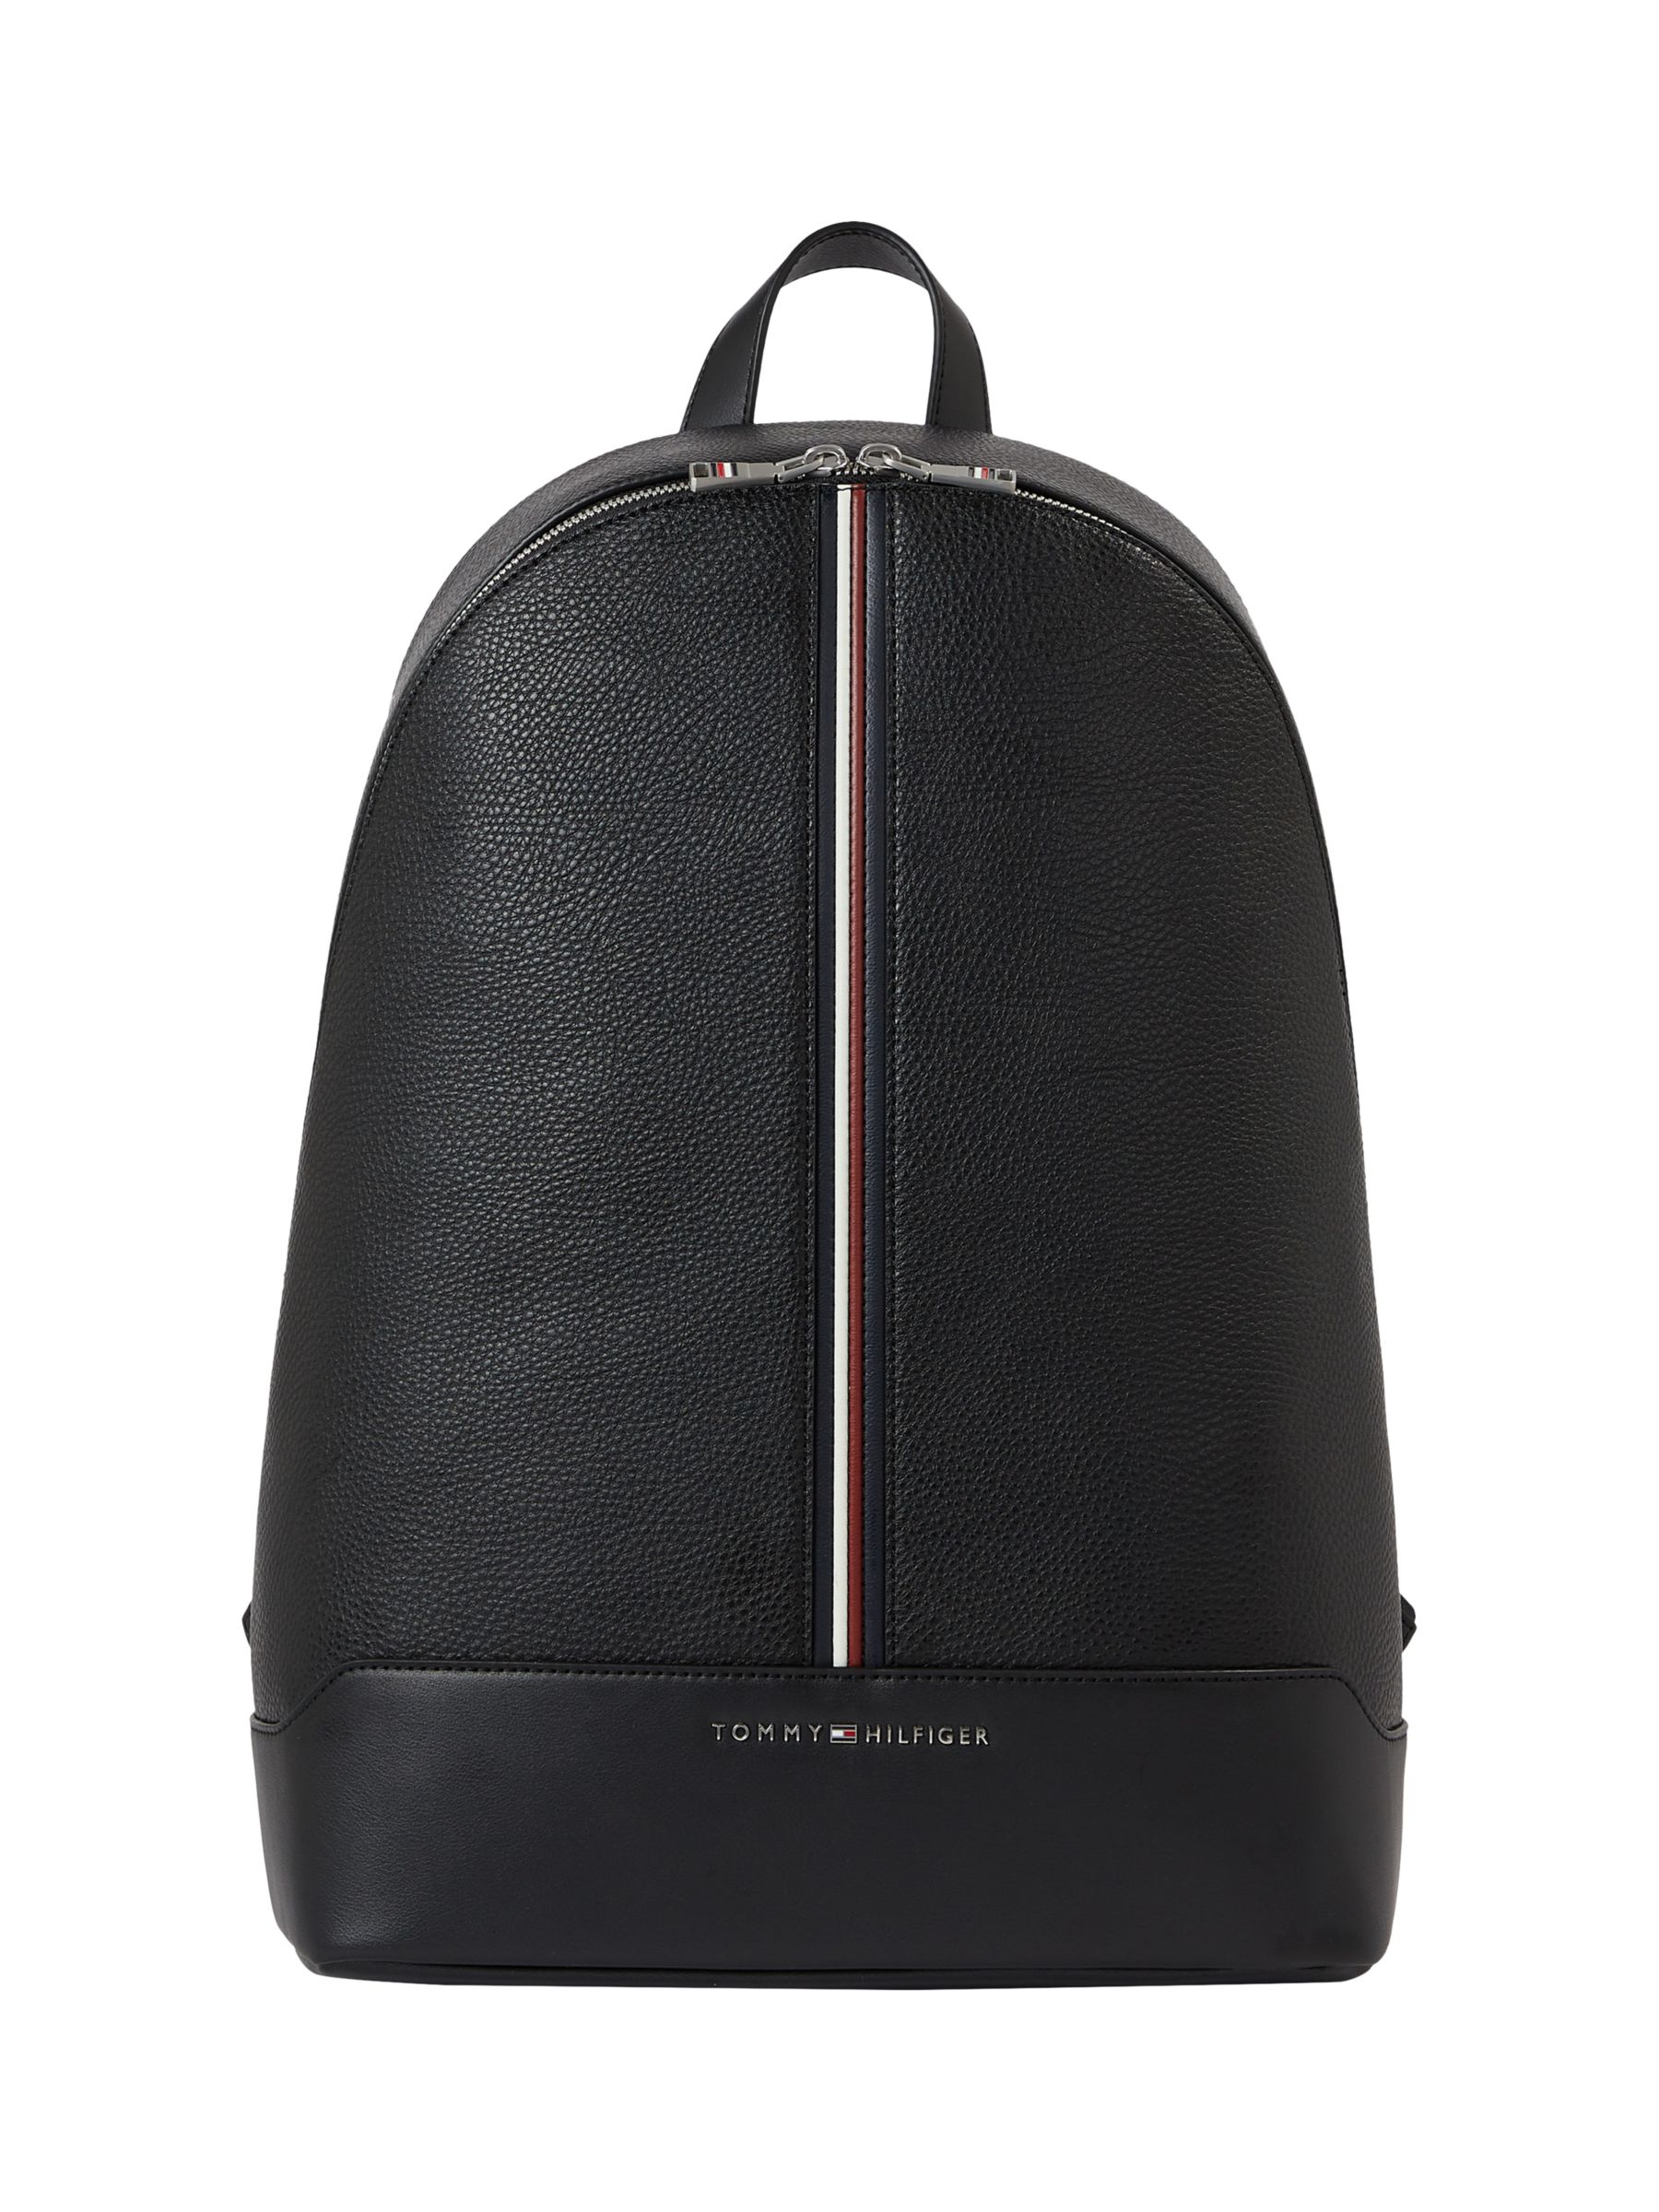 Tommy Hilfiger Domed Backpack, Black at John Lewis & Partners